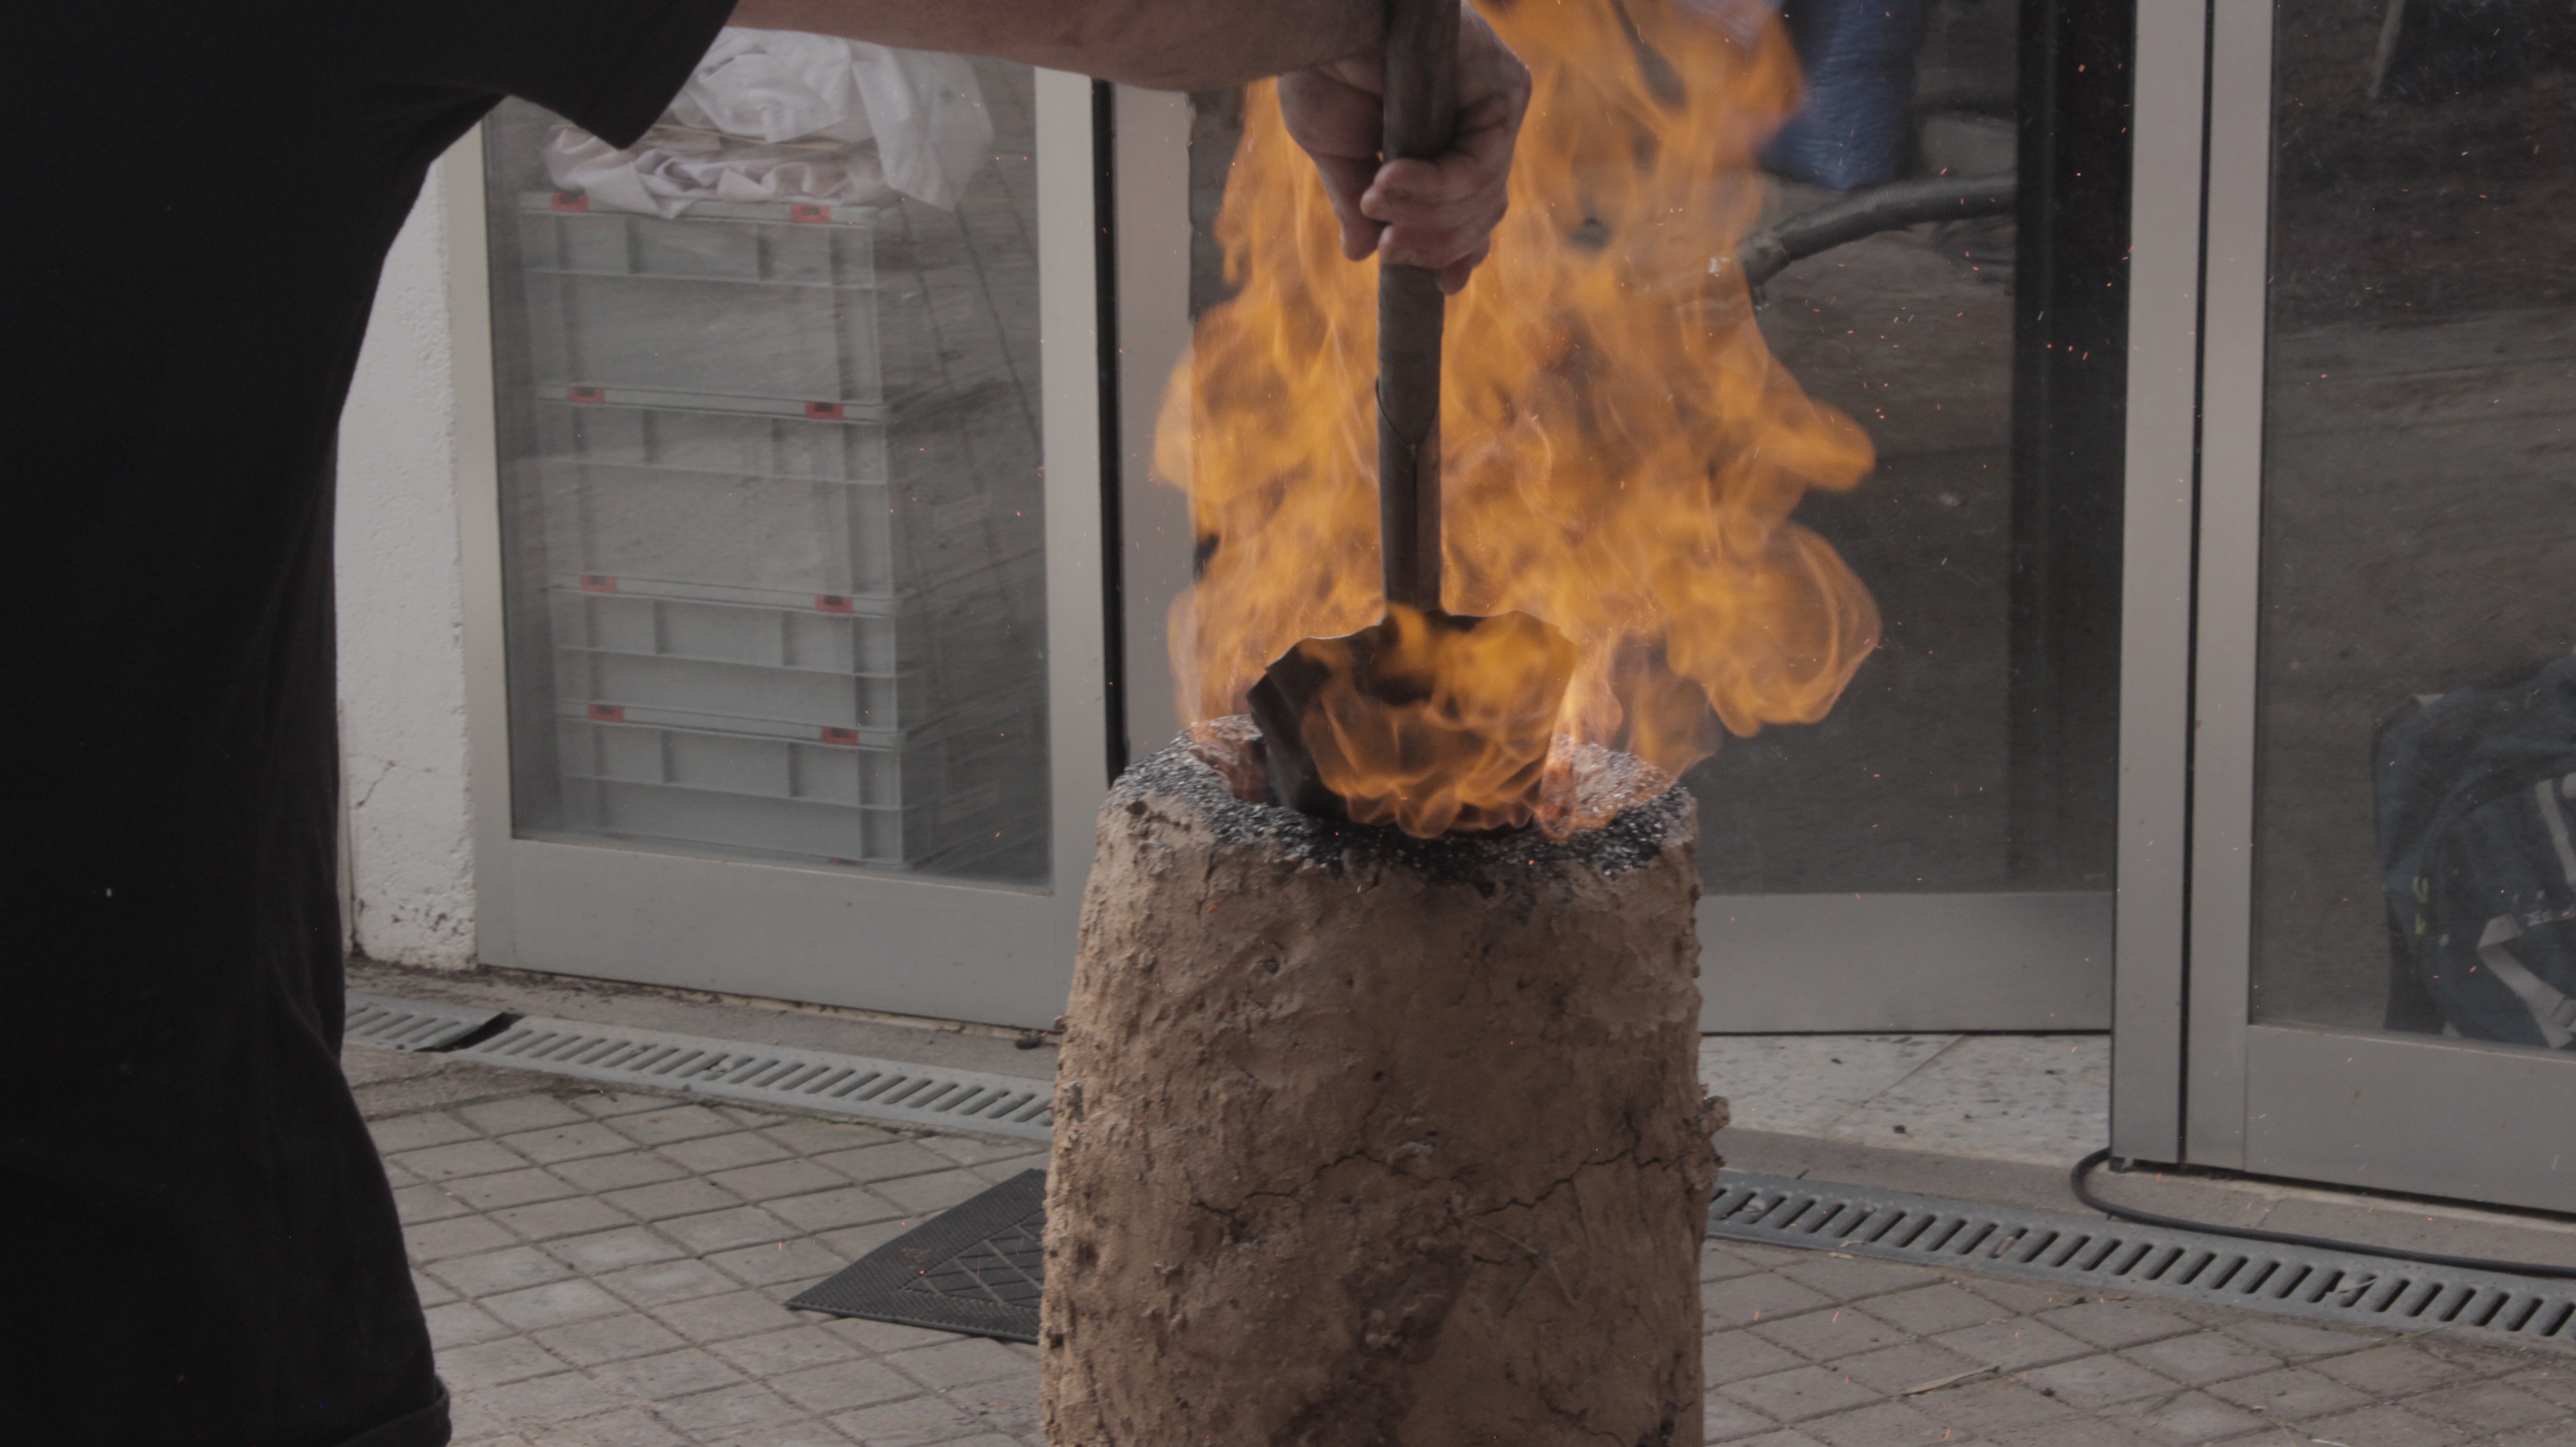 Smelting Experiment at the Universidad Autonòma de Madrid